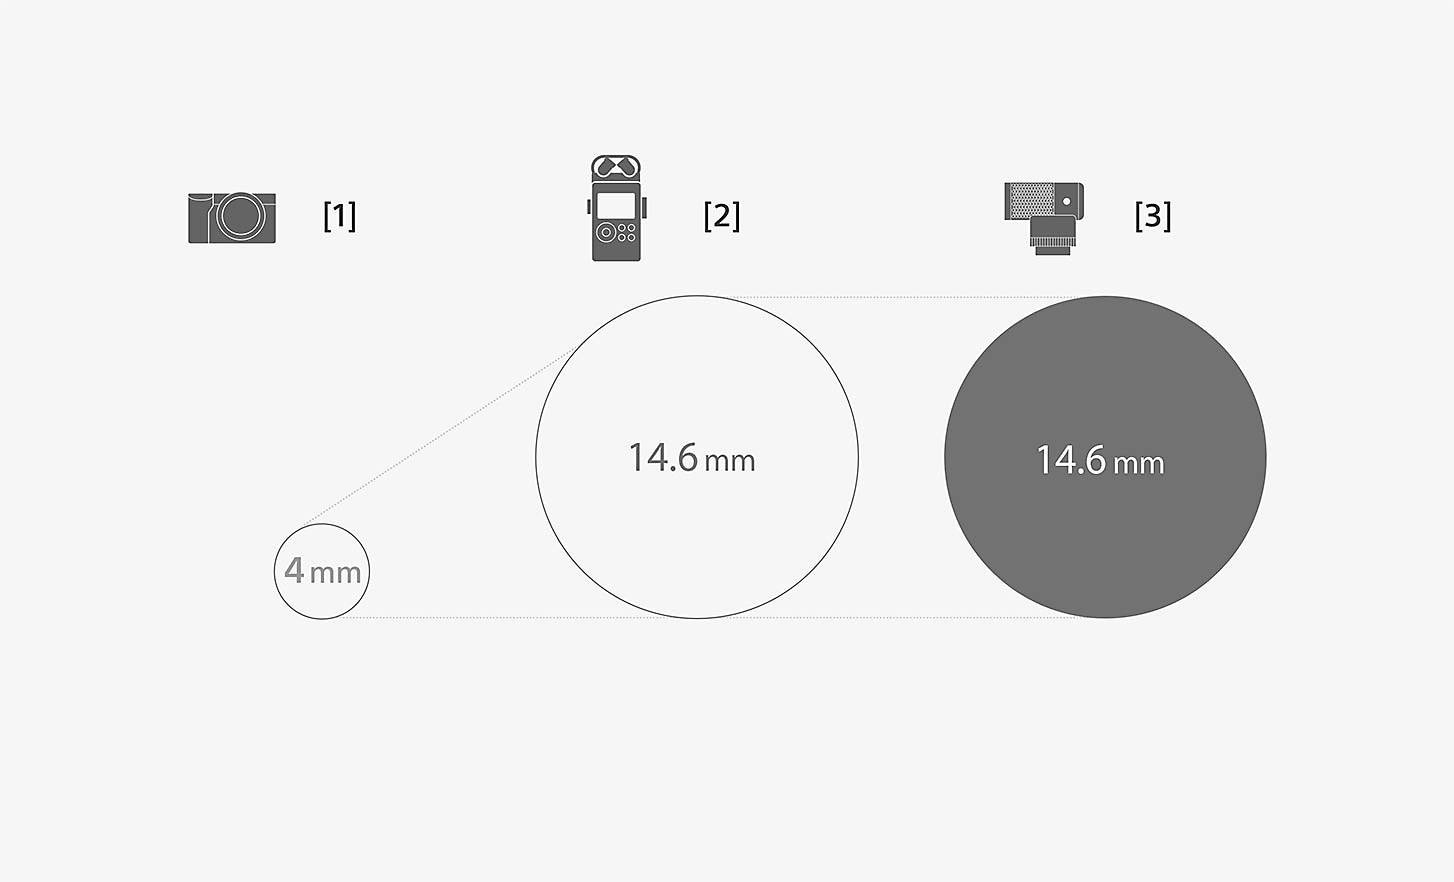 Obrázek porovnávající rozměry vložky mikrofonu ECM-G1 a standardního vestavěného mikrofonu